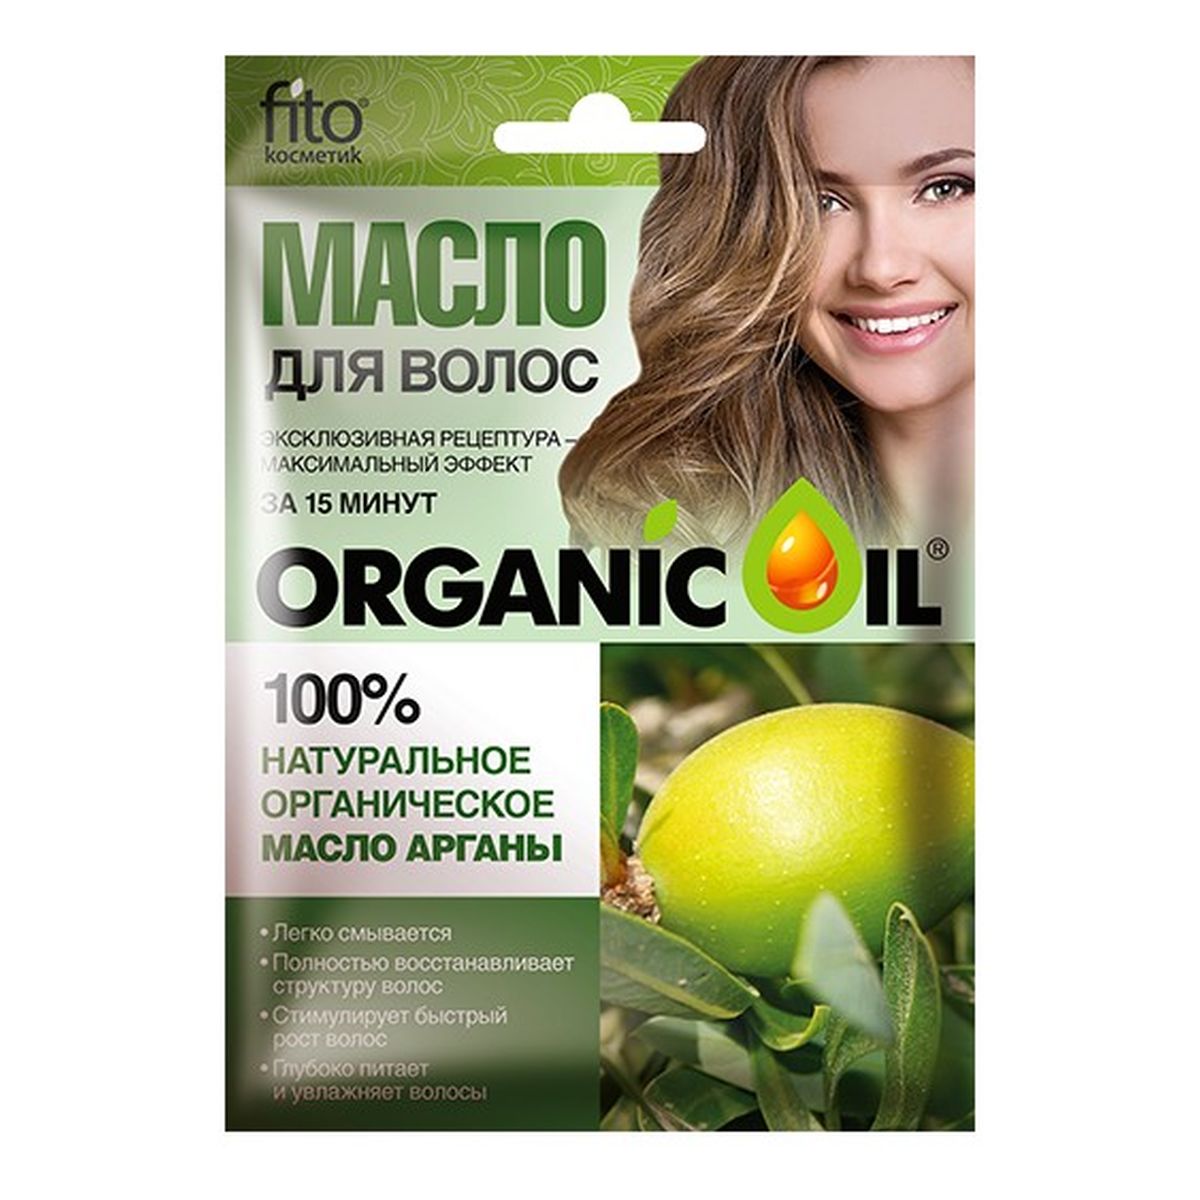 Fitokosmetik Naturalny organiczny olejek arganowy do włosów 20ml